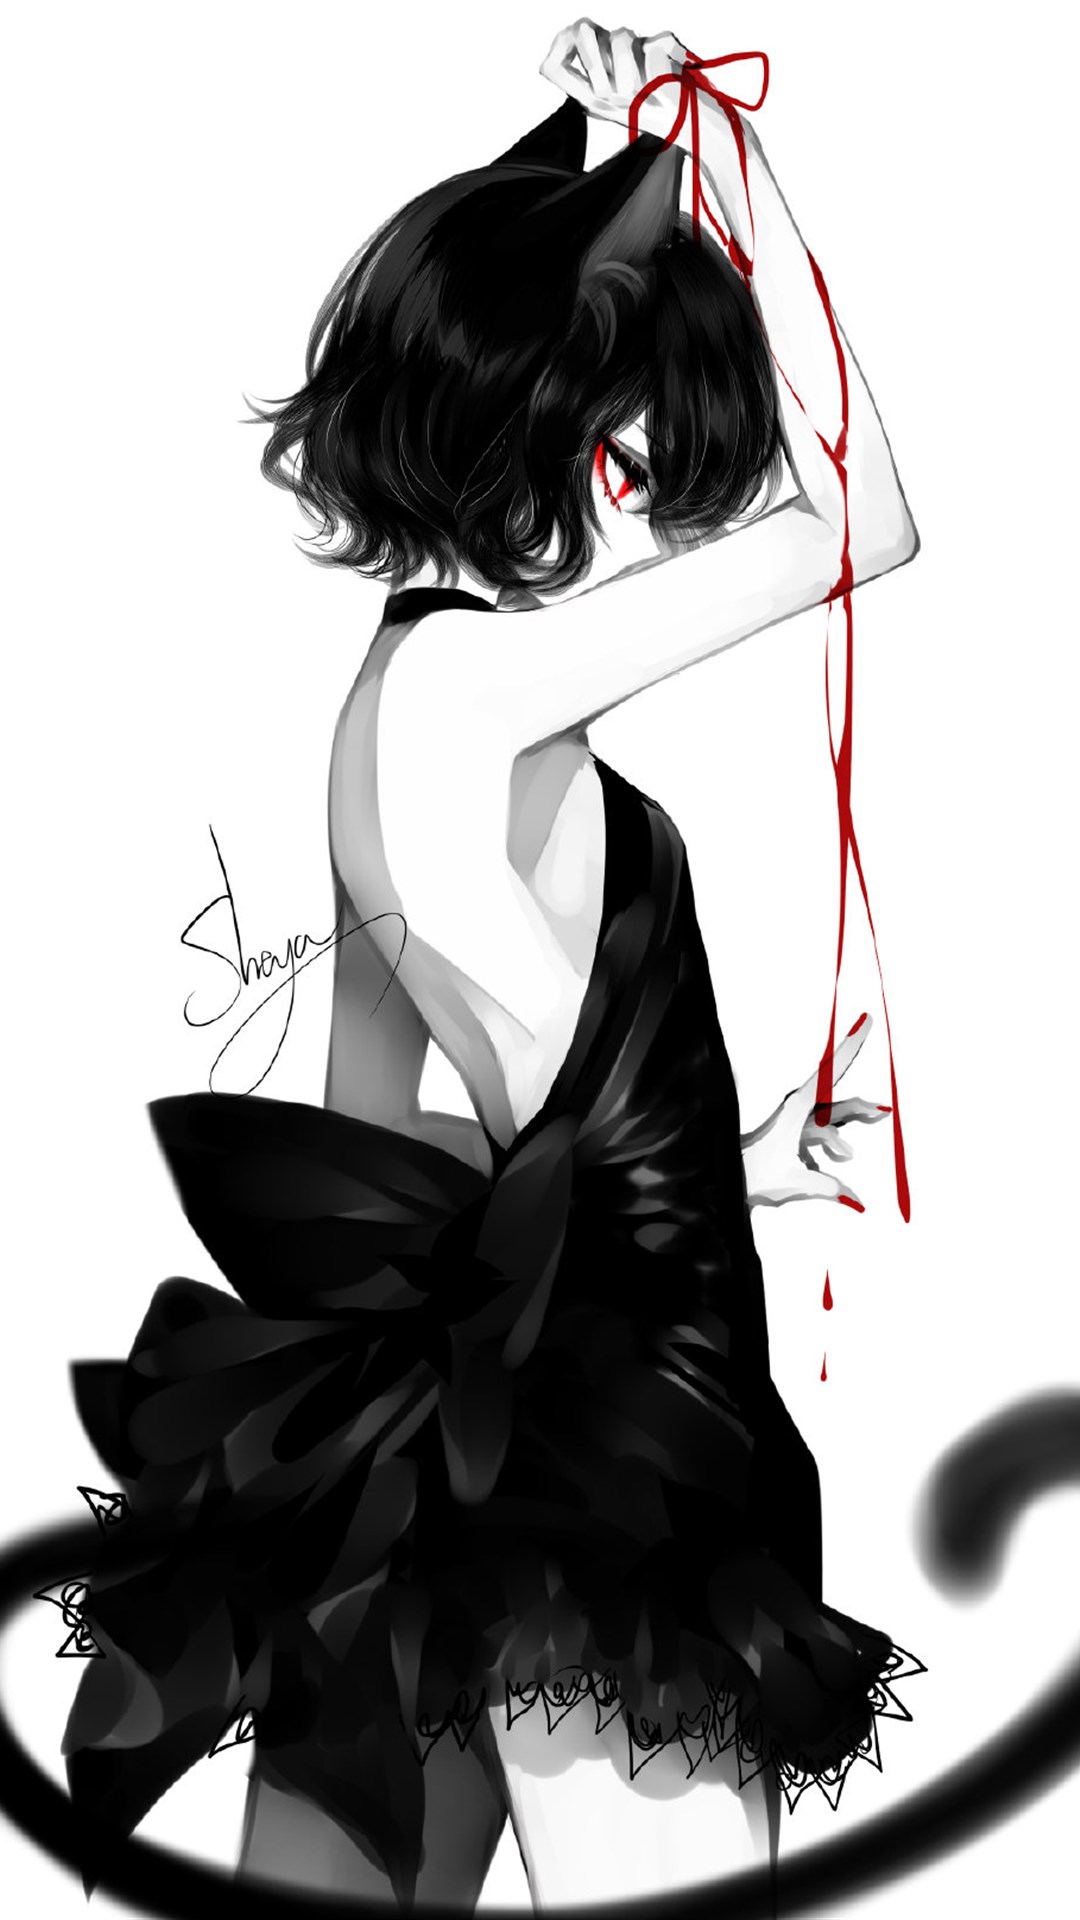 暗黑系列少女插画,黑白色调沉闷压抑,红色的点缀更添诡异